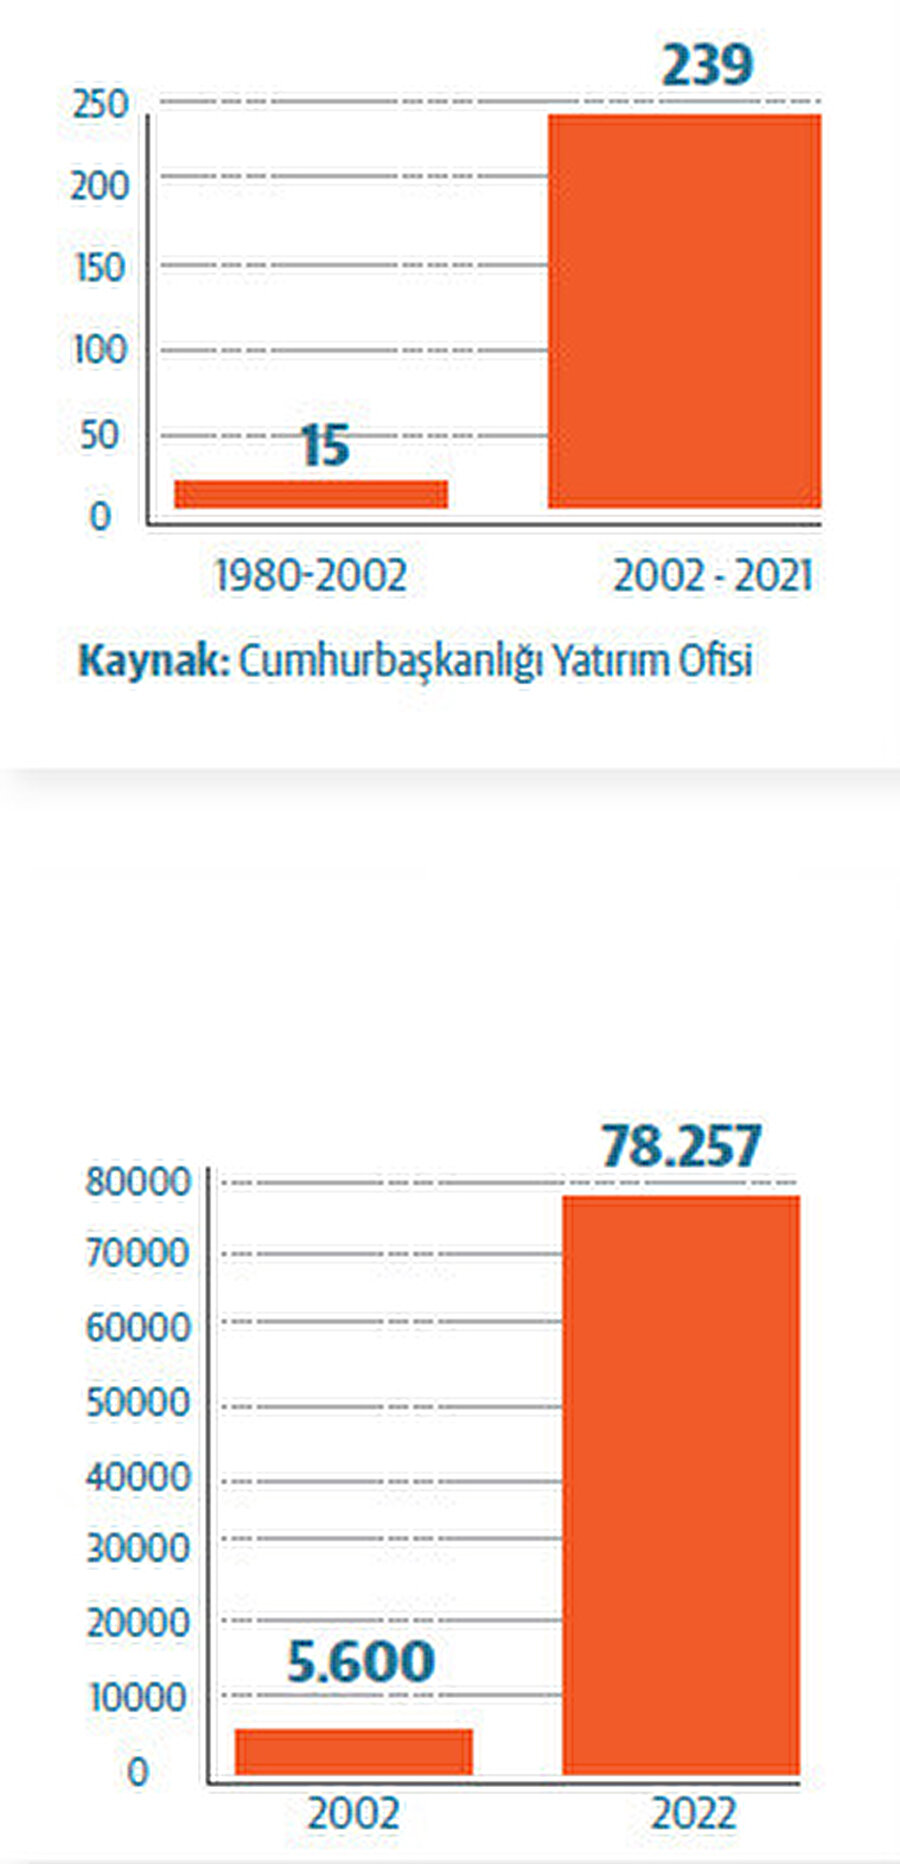 Türkiye’ye UDY girişi (Kümülatif, milyar dolar) ve uluslararası sermayeli şirket sayısı.